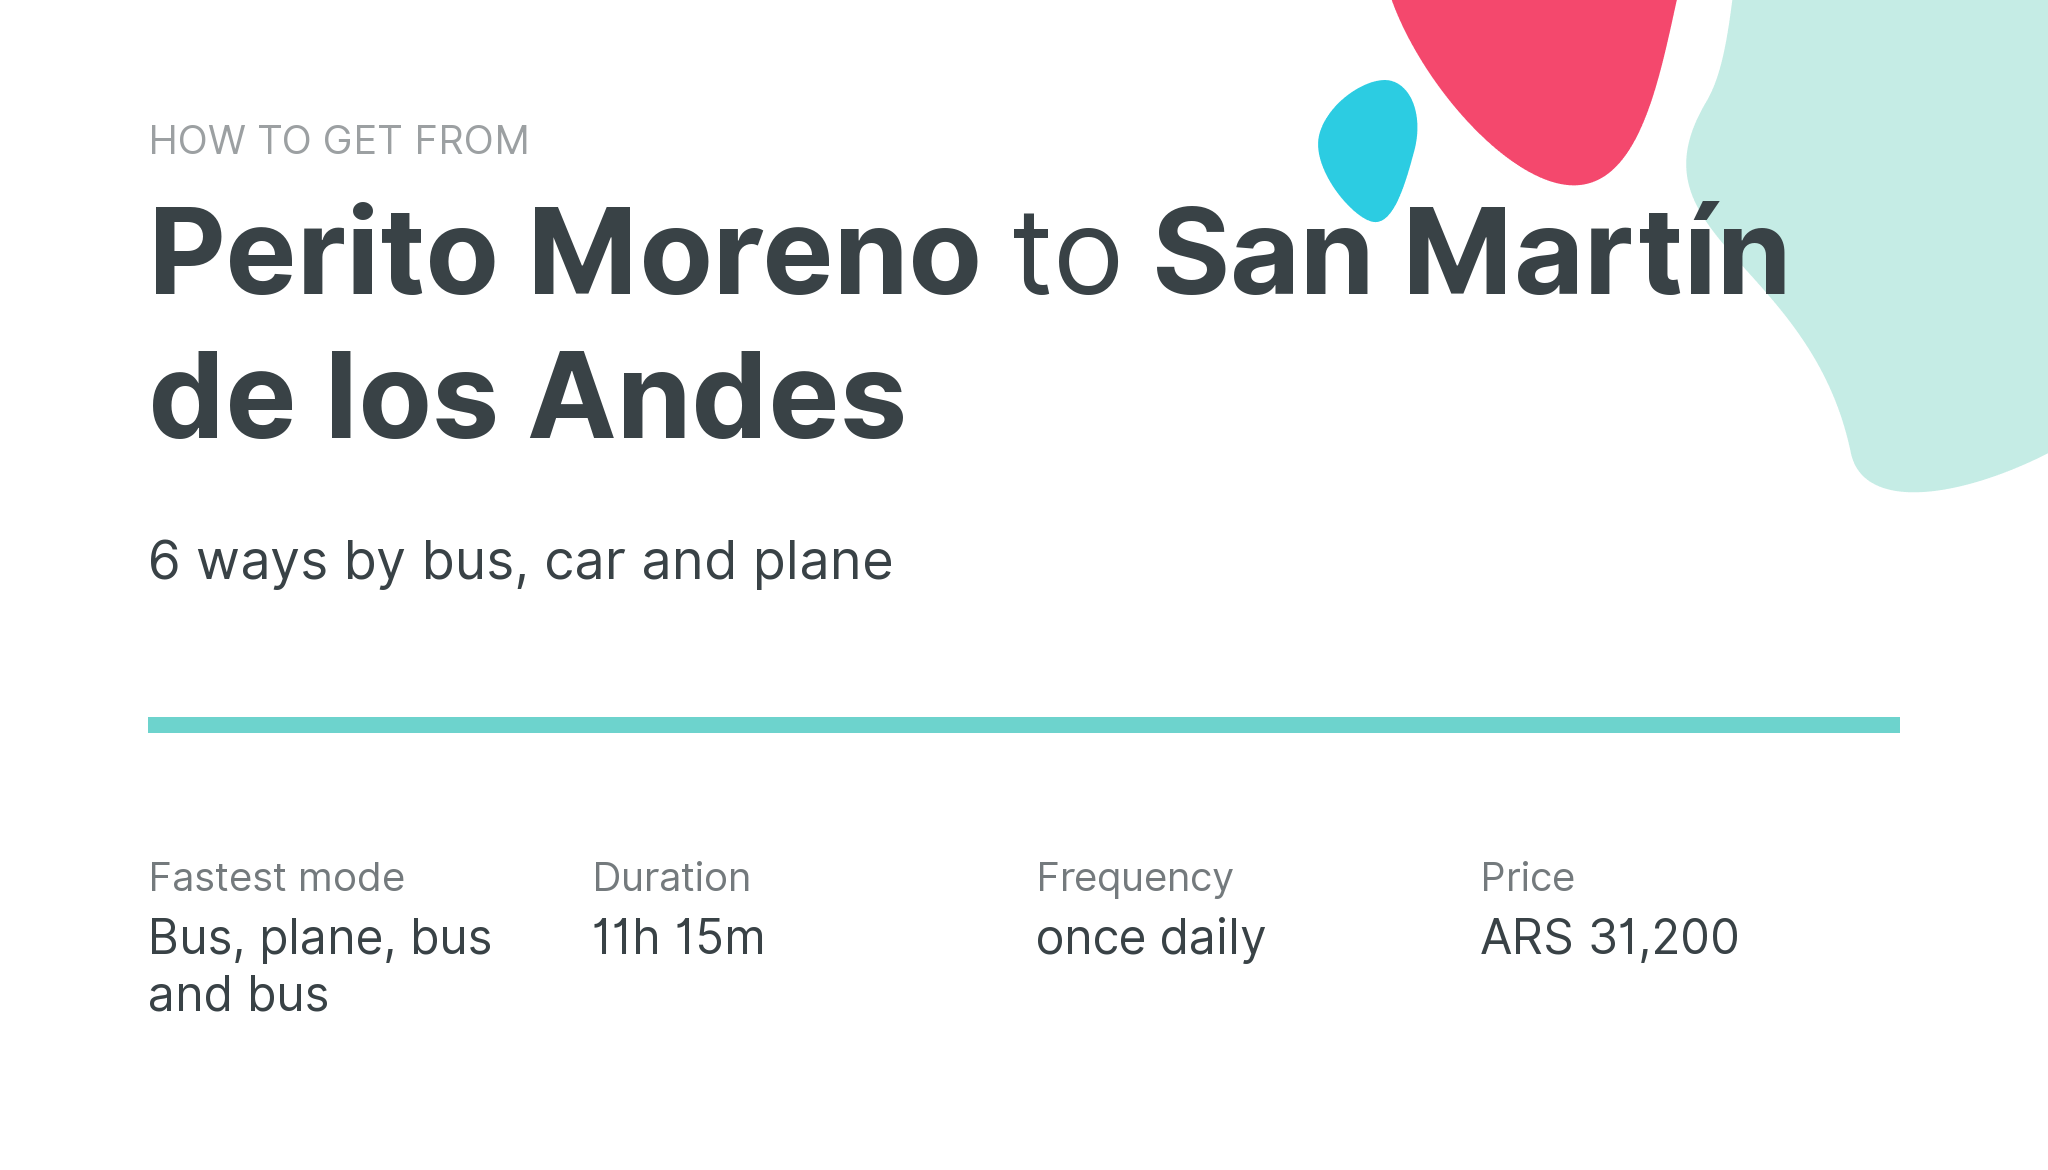 How do I get from Perito Moreno to San Martín de los Andes